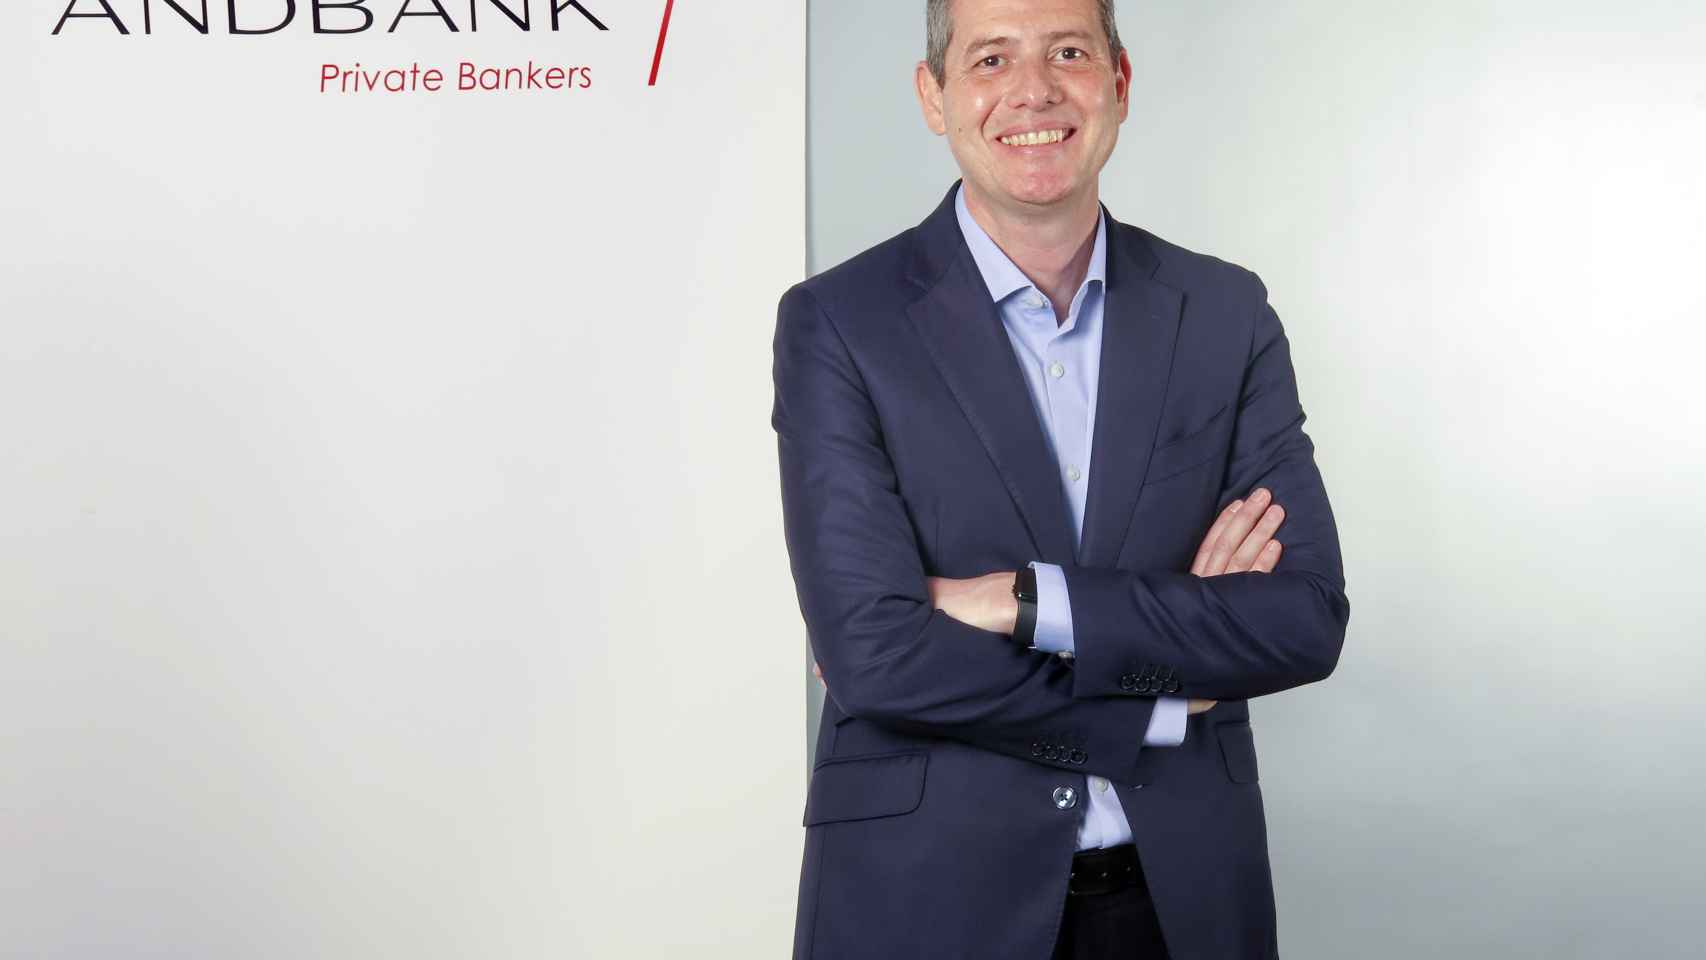 Andbank ficha a Javier Planelles (Ceca) como responsable de Tecnología y Operaciones